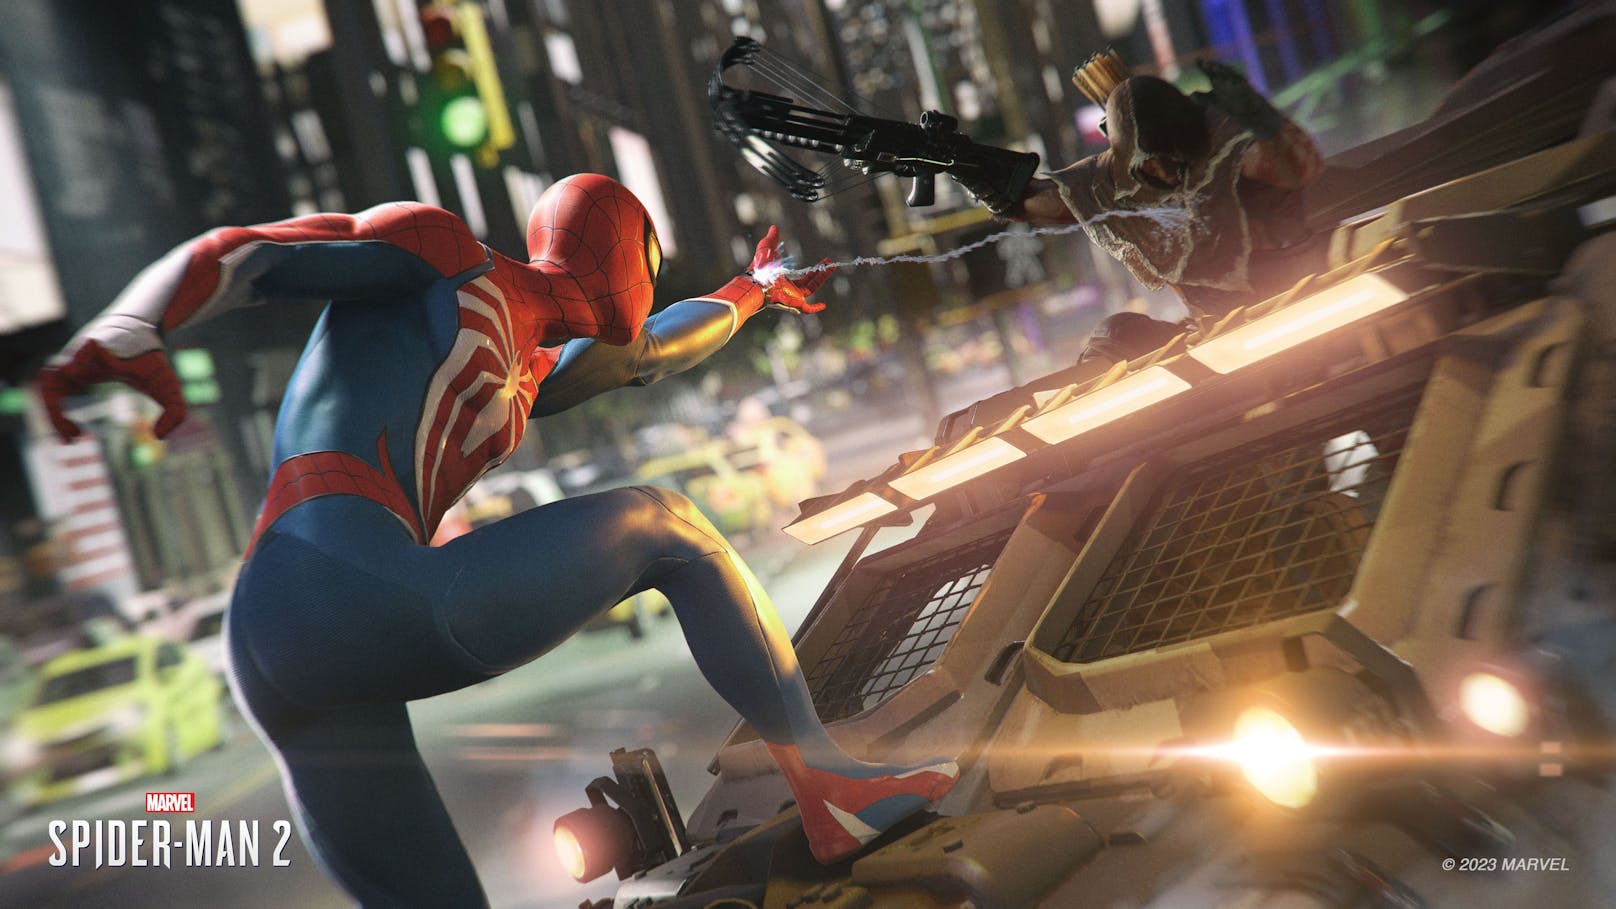 "Marvel’s Spider-Man 2" zeigt sich im Test als Spinnen-Spektakel der Superlative und als bestes Superhelden-Game, das es jemals gab.